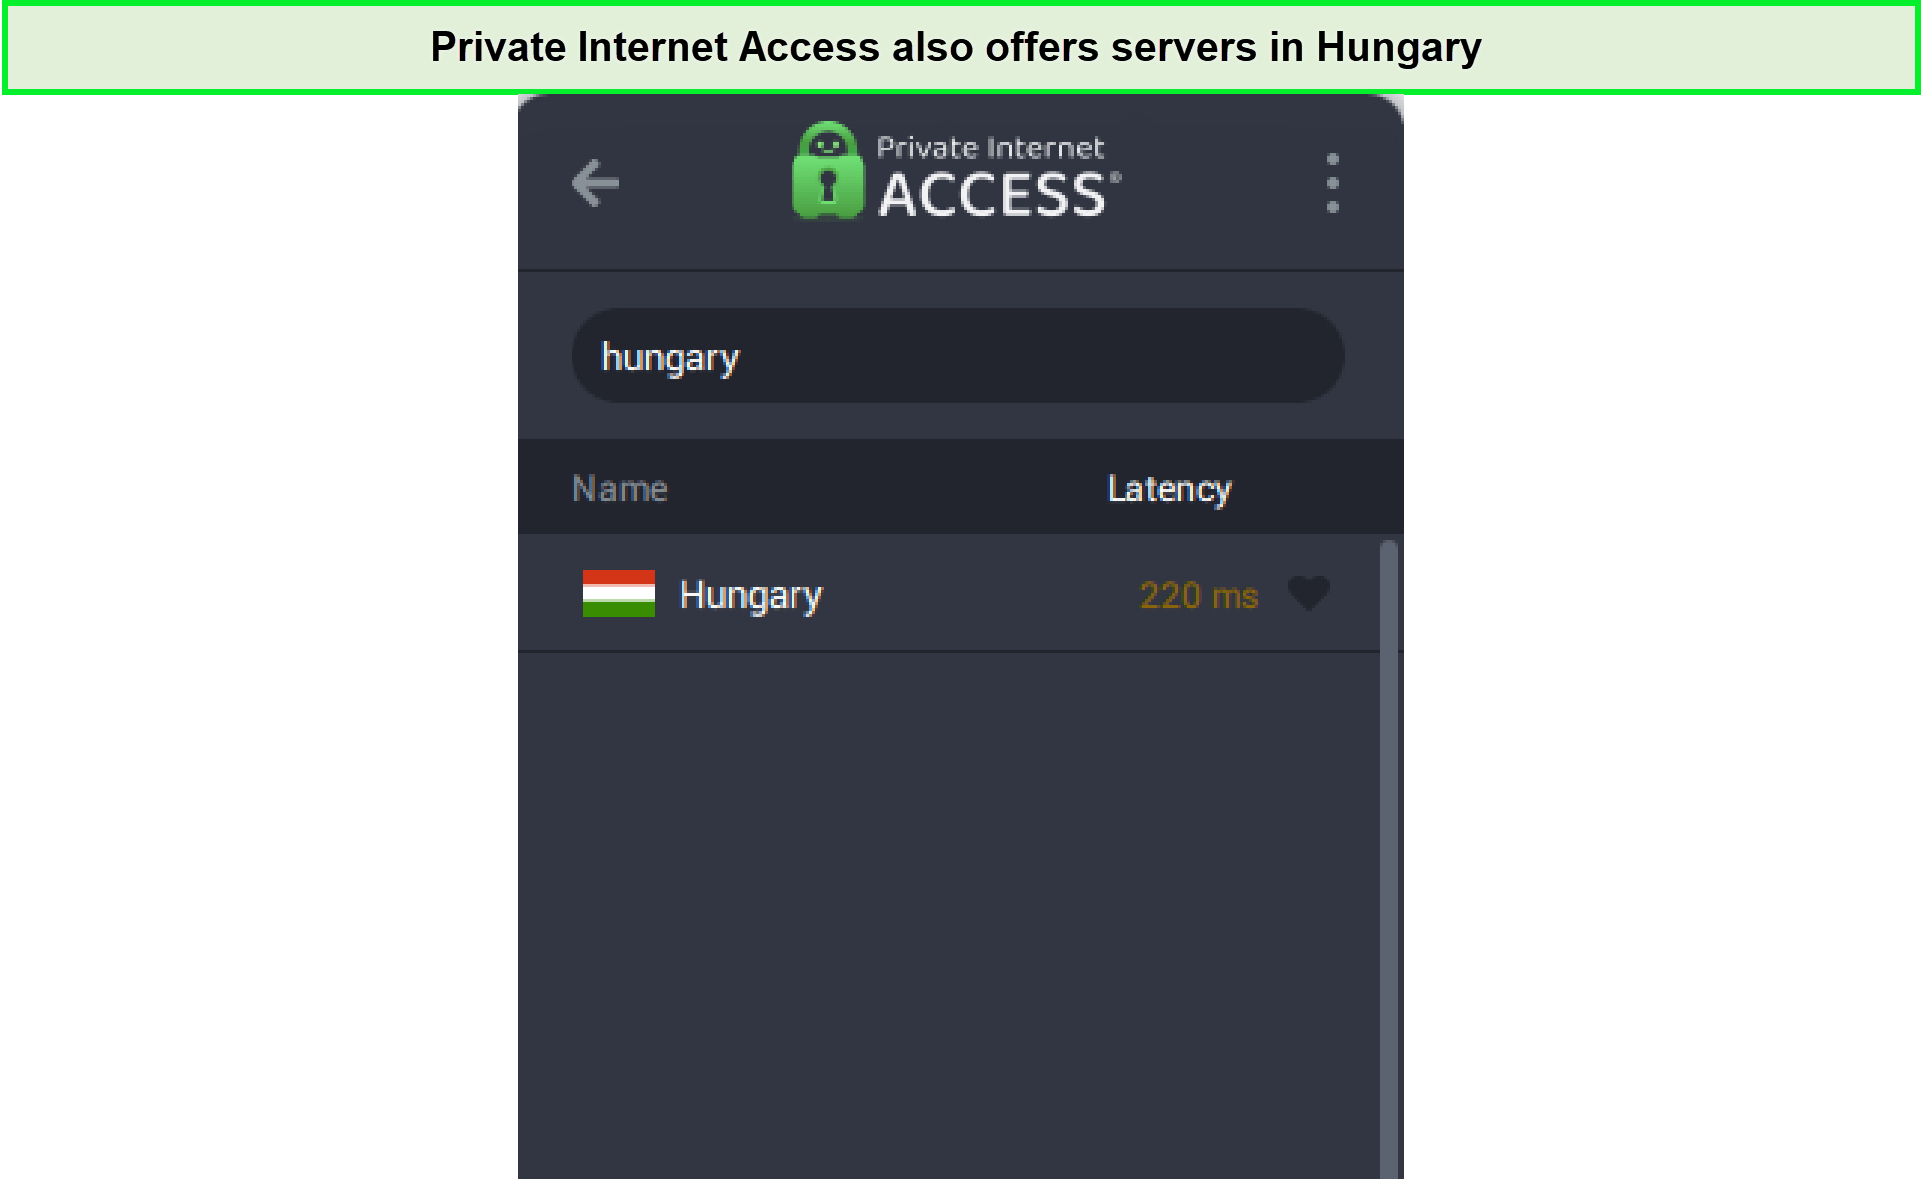 pia-hungary-servers-